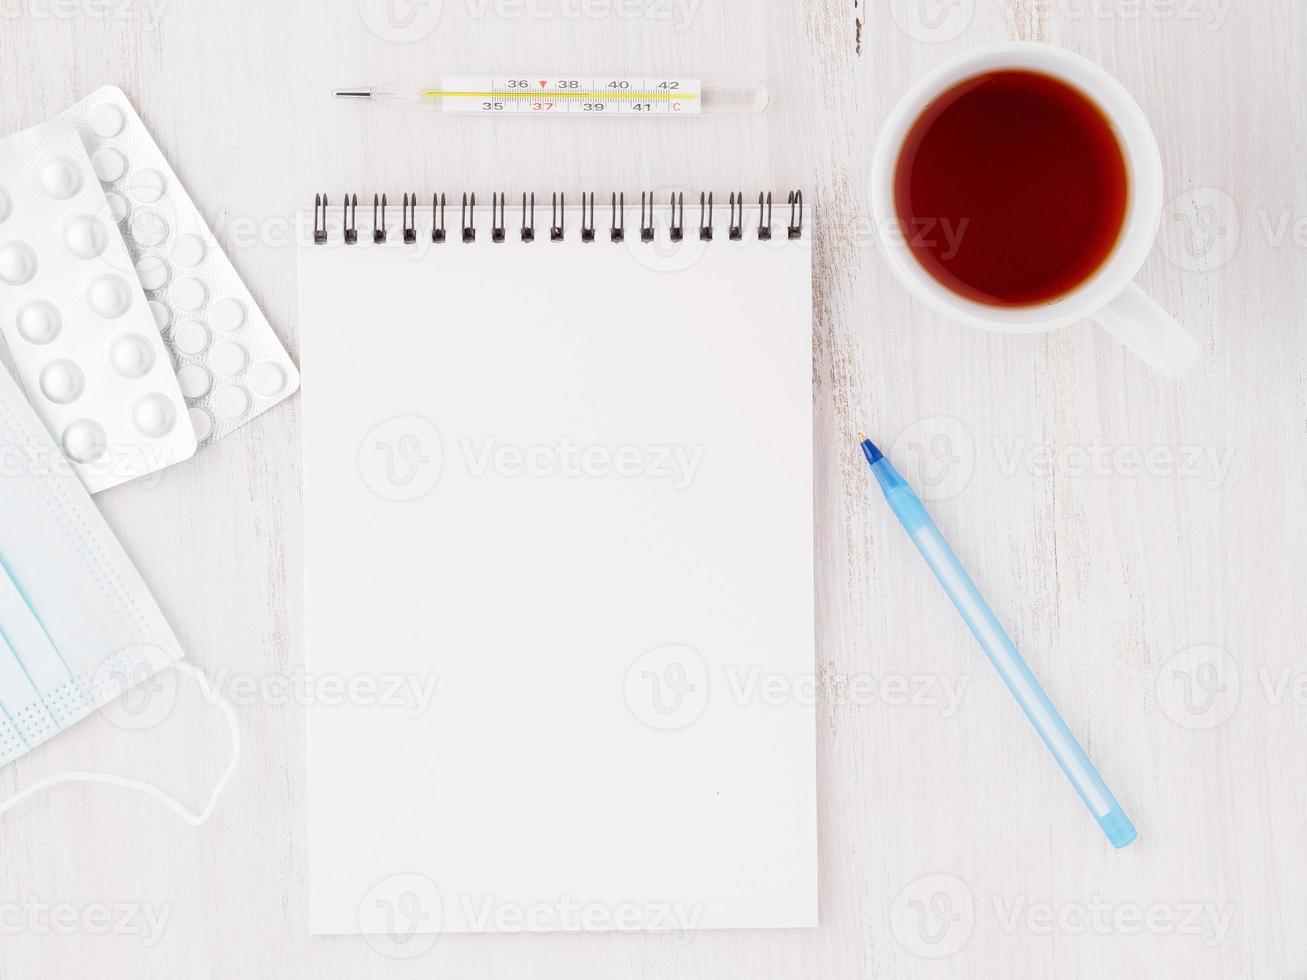 aprire il taccuino con una pagina bianca bianca vuota per scrivere il piano di trattamento del illnedd. pillole, penna, carta, termometro su fondo di legno bianco, vista dall'alto. foto